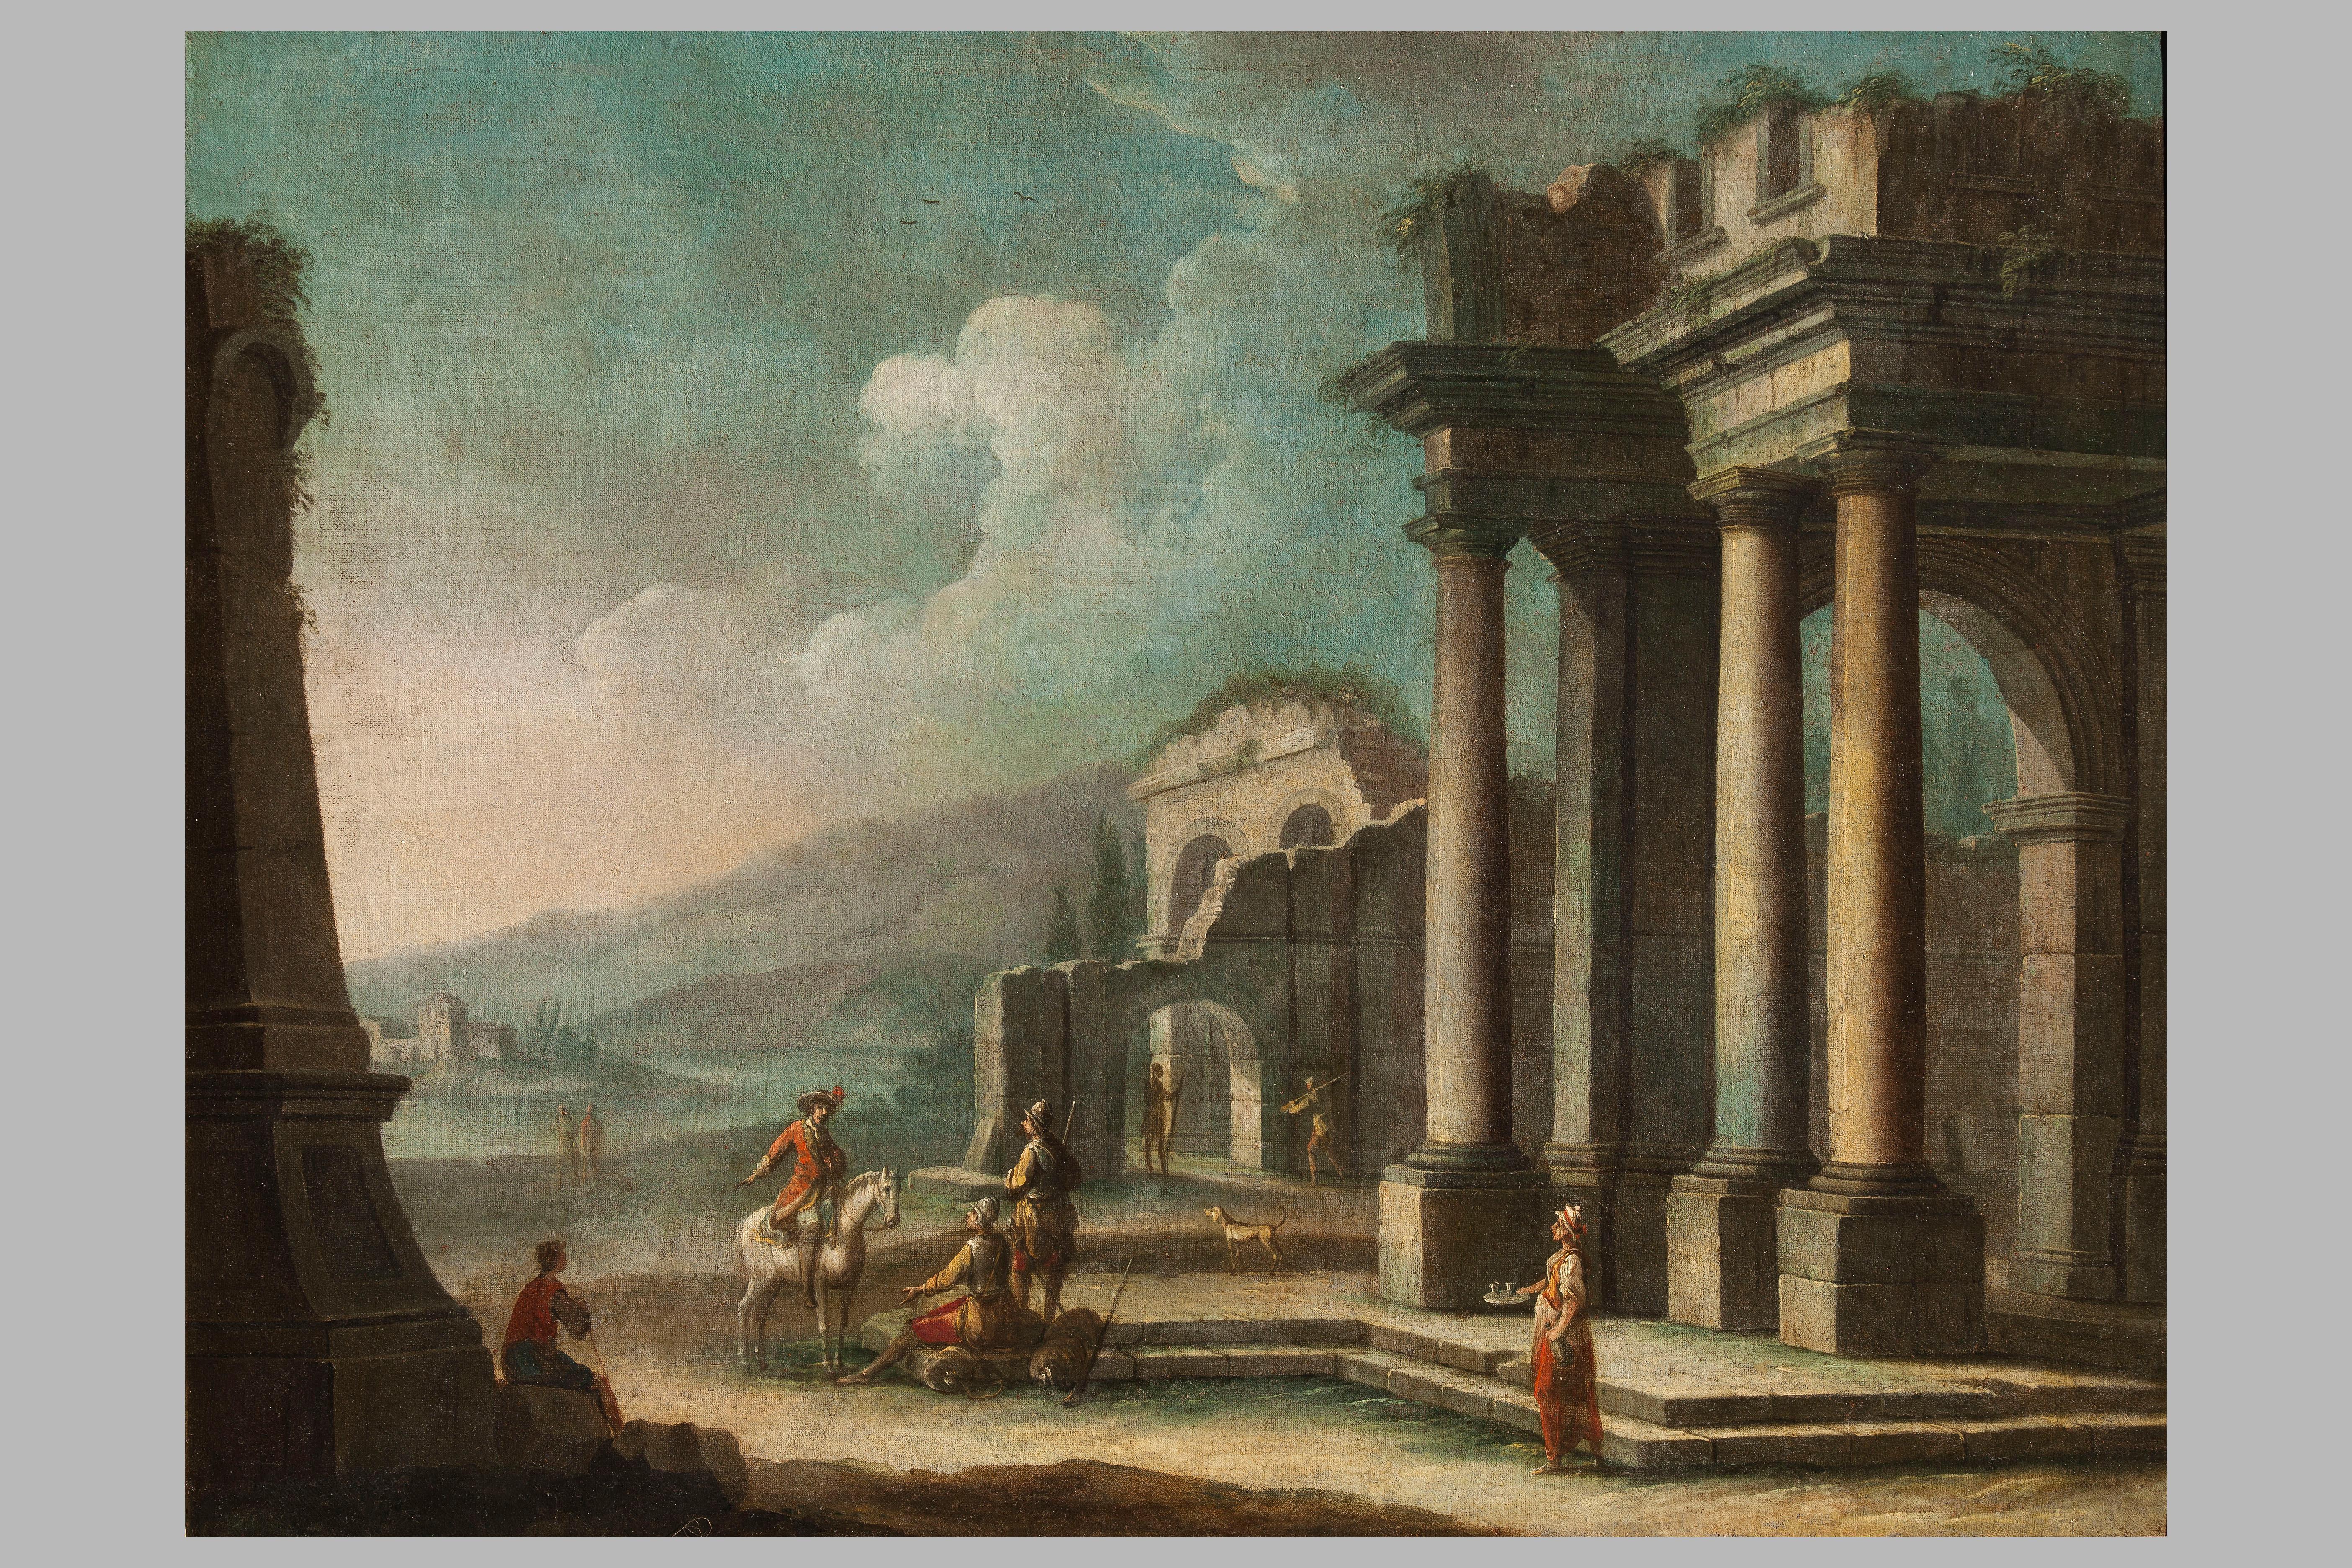 Der Preis ist für das Gemäldepaar bestimmt.


Gutachten von Prof. Giancarlo Sestieri.

Dieses Gemäldepaar von Giovanni Domenico Gambone (1720 - 1793) stellt ein architektonisches Capriccio mit archäologischen Ruinen und Menschen dar, die miteinander